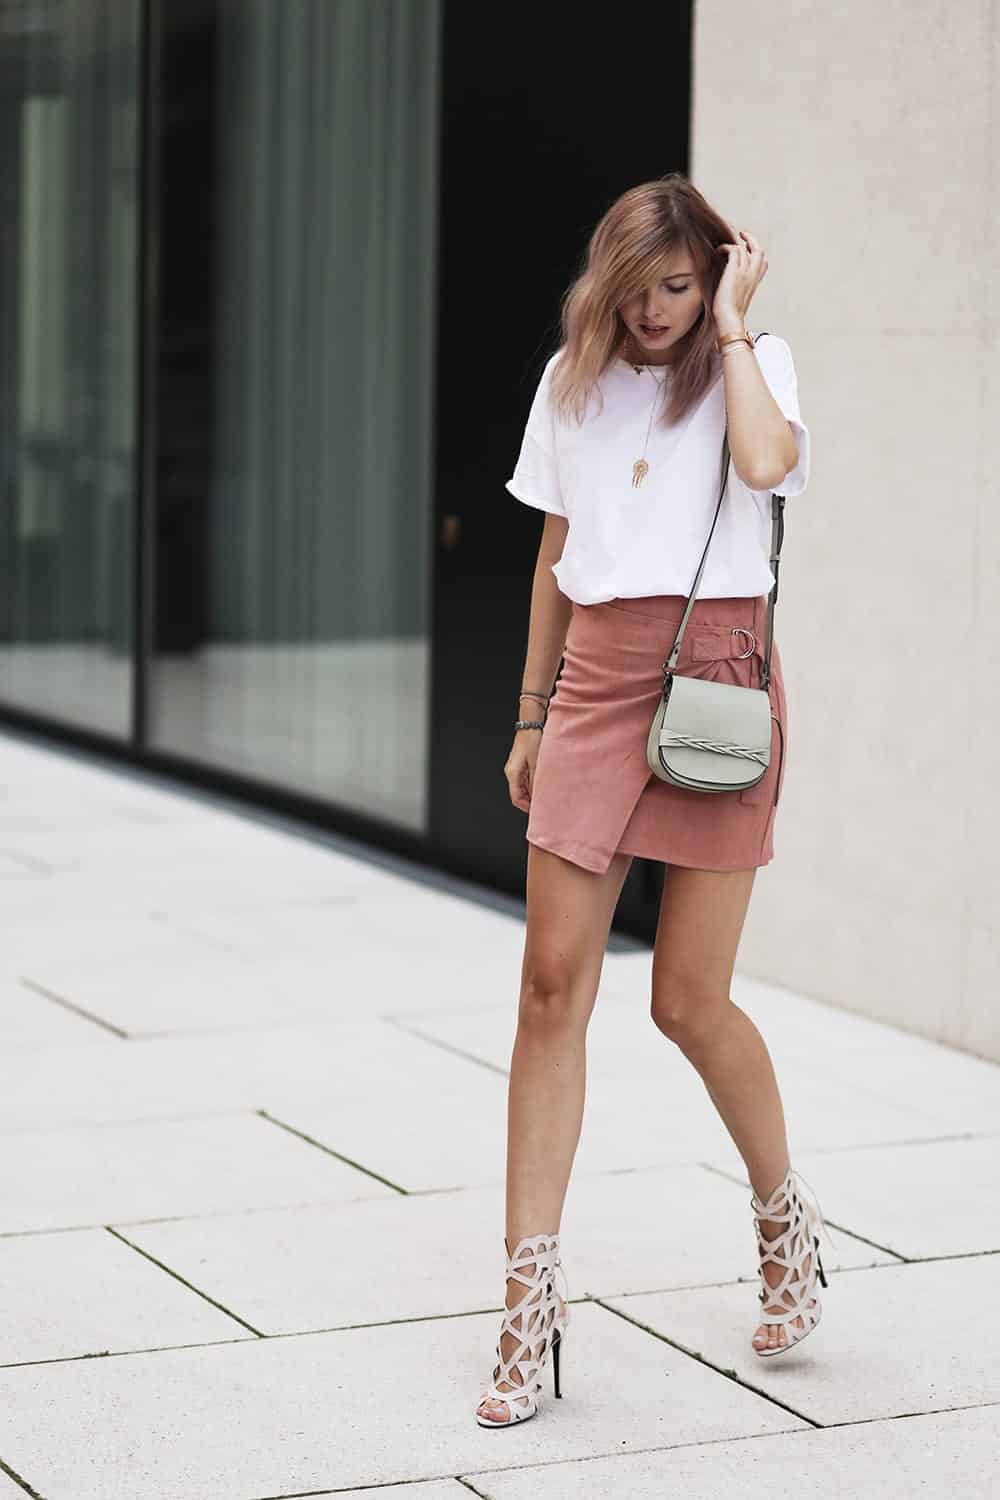 Cute Seude Skirt Outfits-17 Ways to Wear Seude Skirts